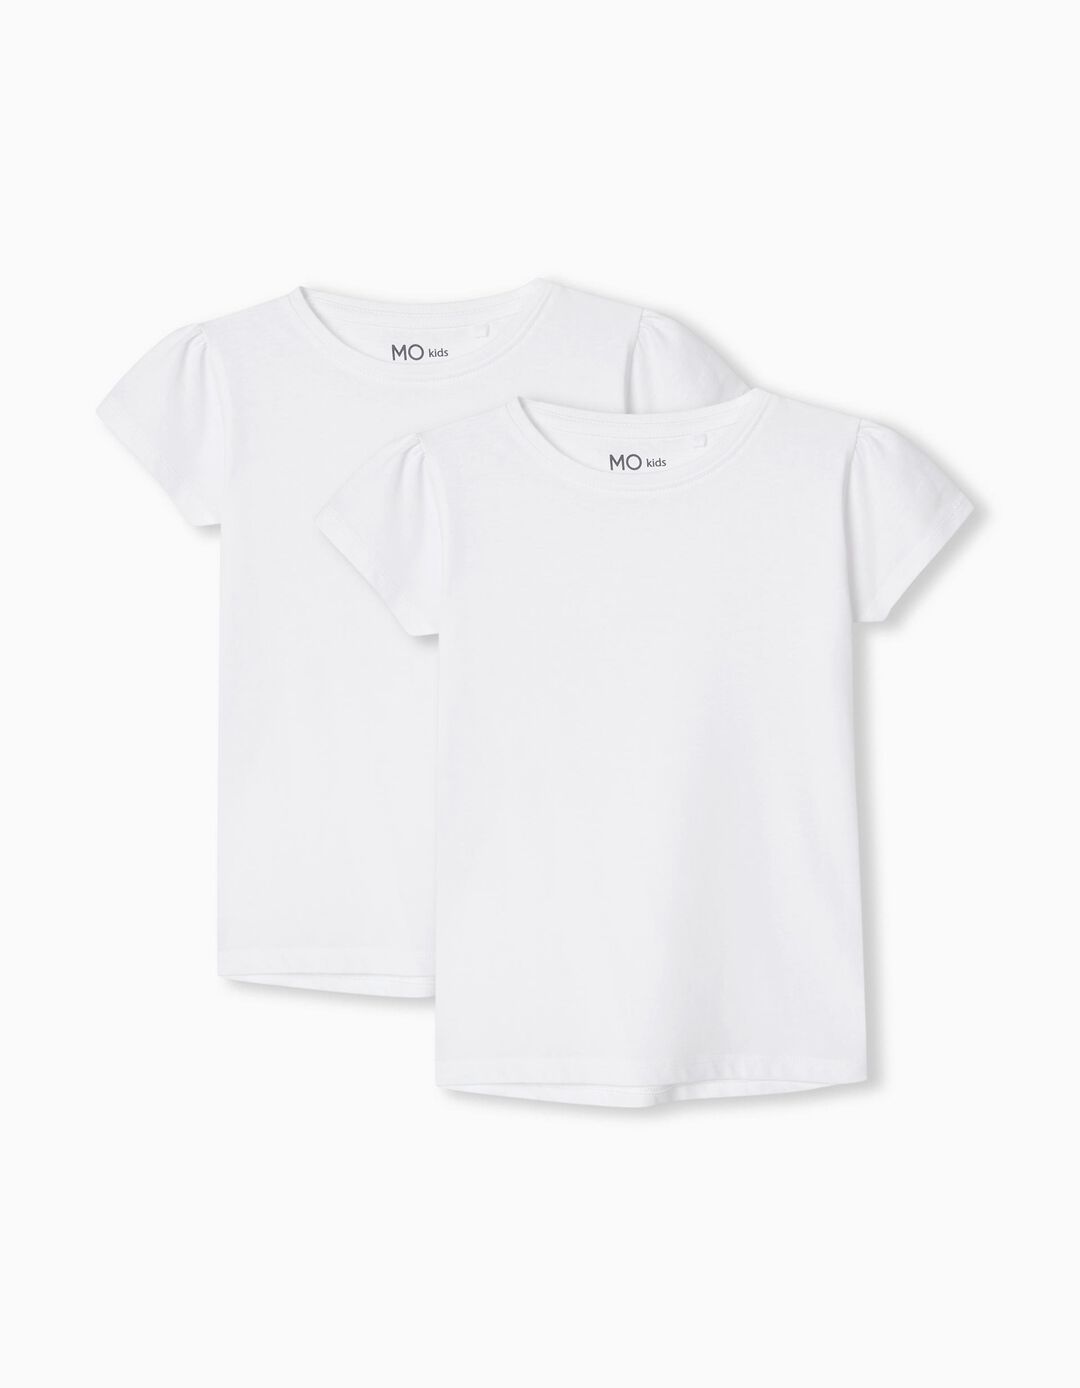 2 T-shirts Pack, Girls, White